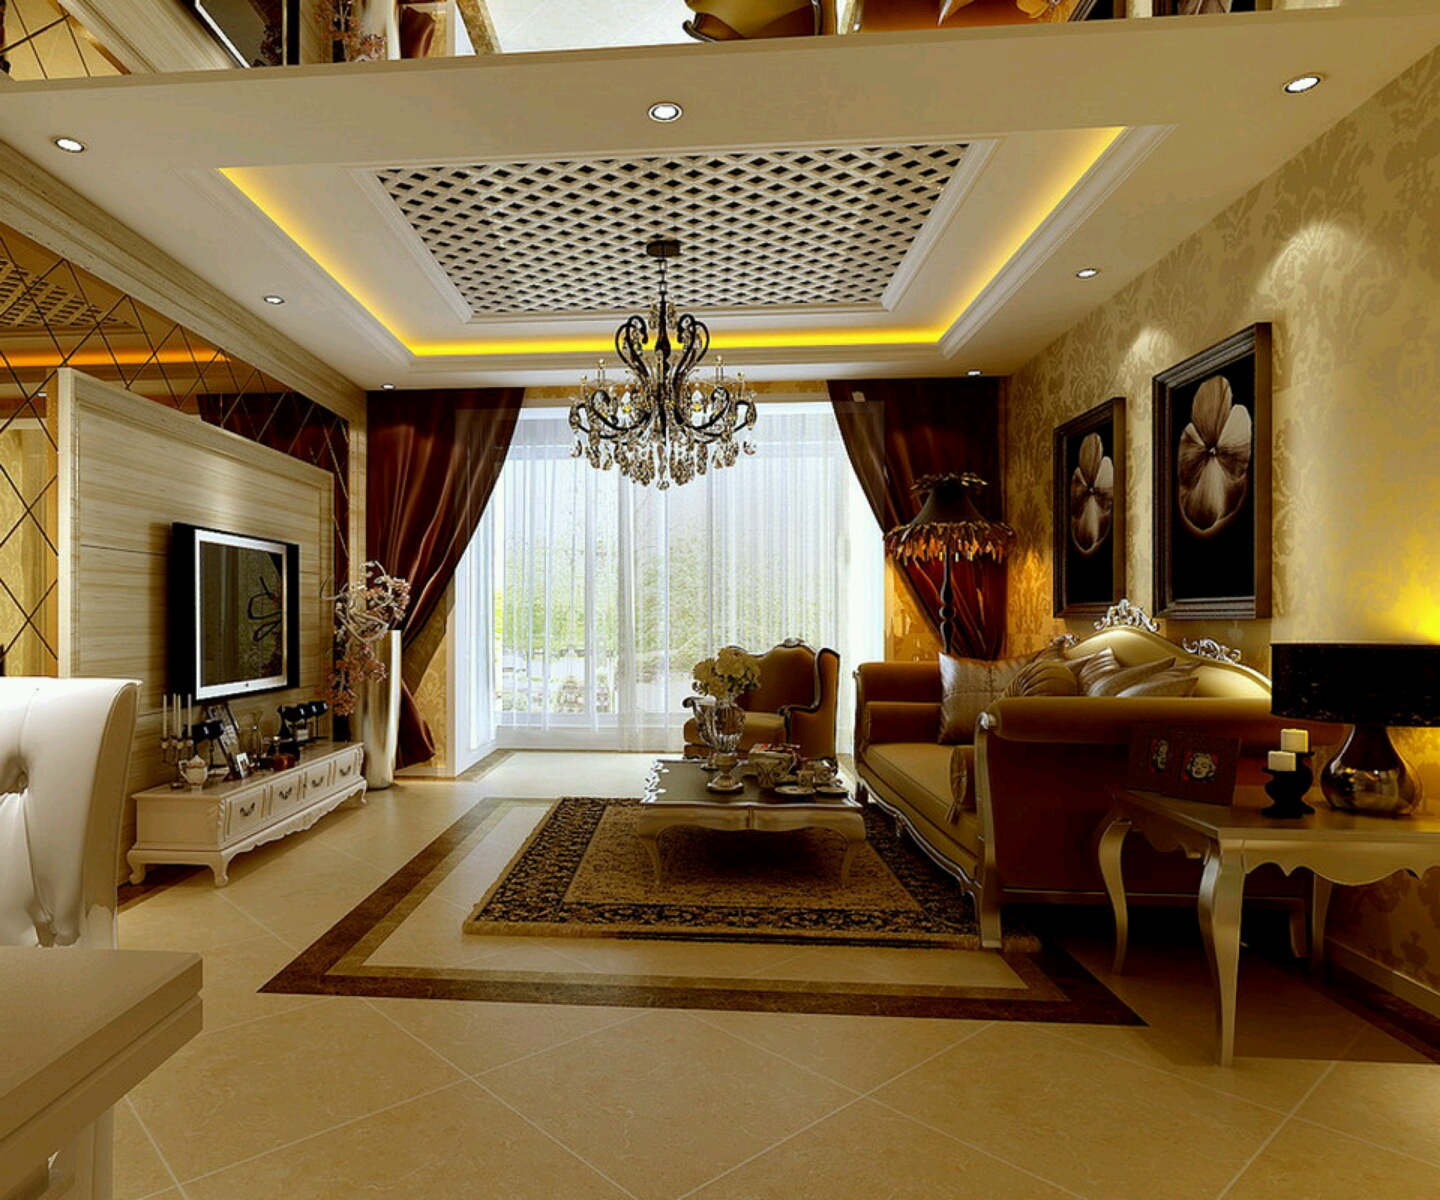 Home Design Inside